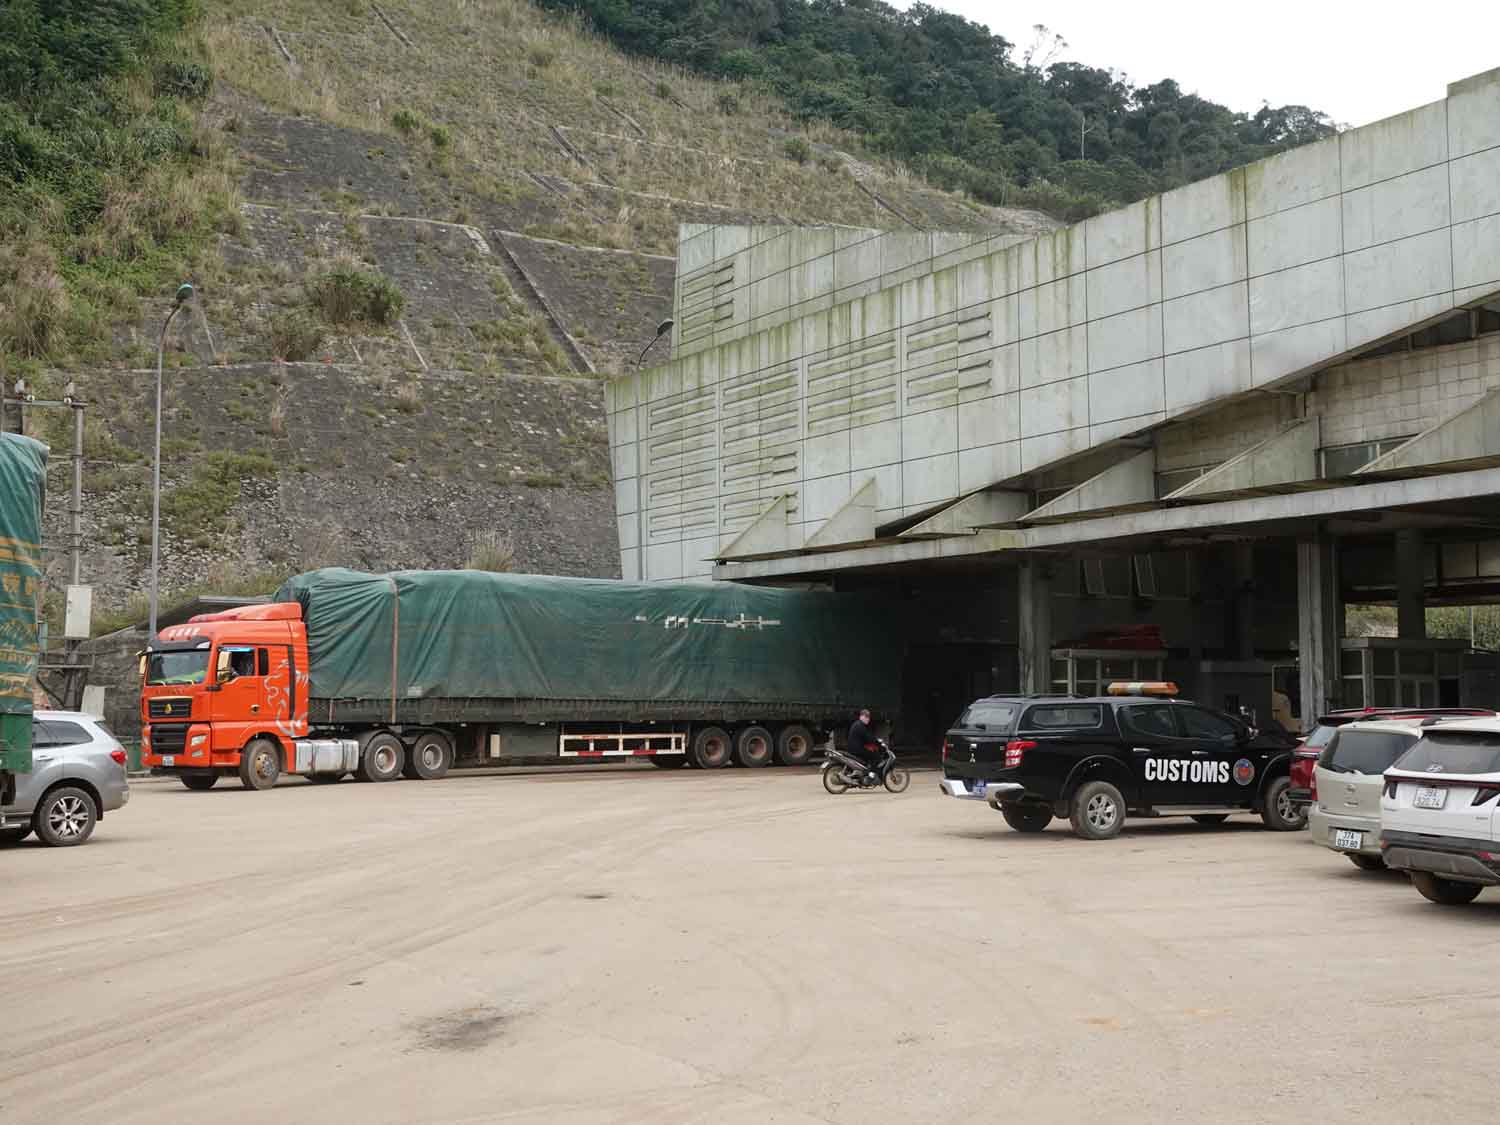 Xe tải sau khi hoàn tất kiểm tra đã ra khỏi luồng kiểm soát ở Cửa khẩu Cầu Treo để chở hàng vào nội địa. Ảnh: Trần Tuấn.